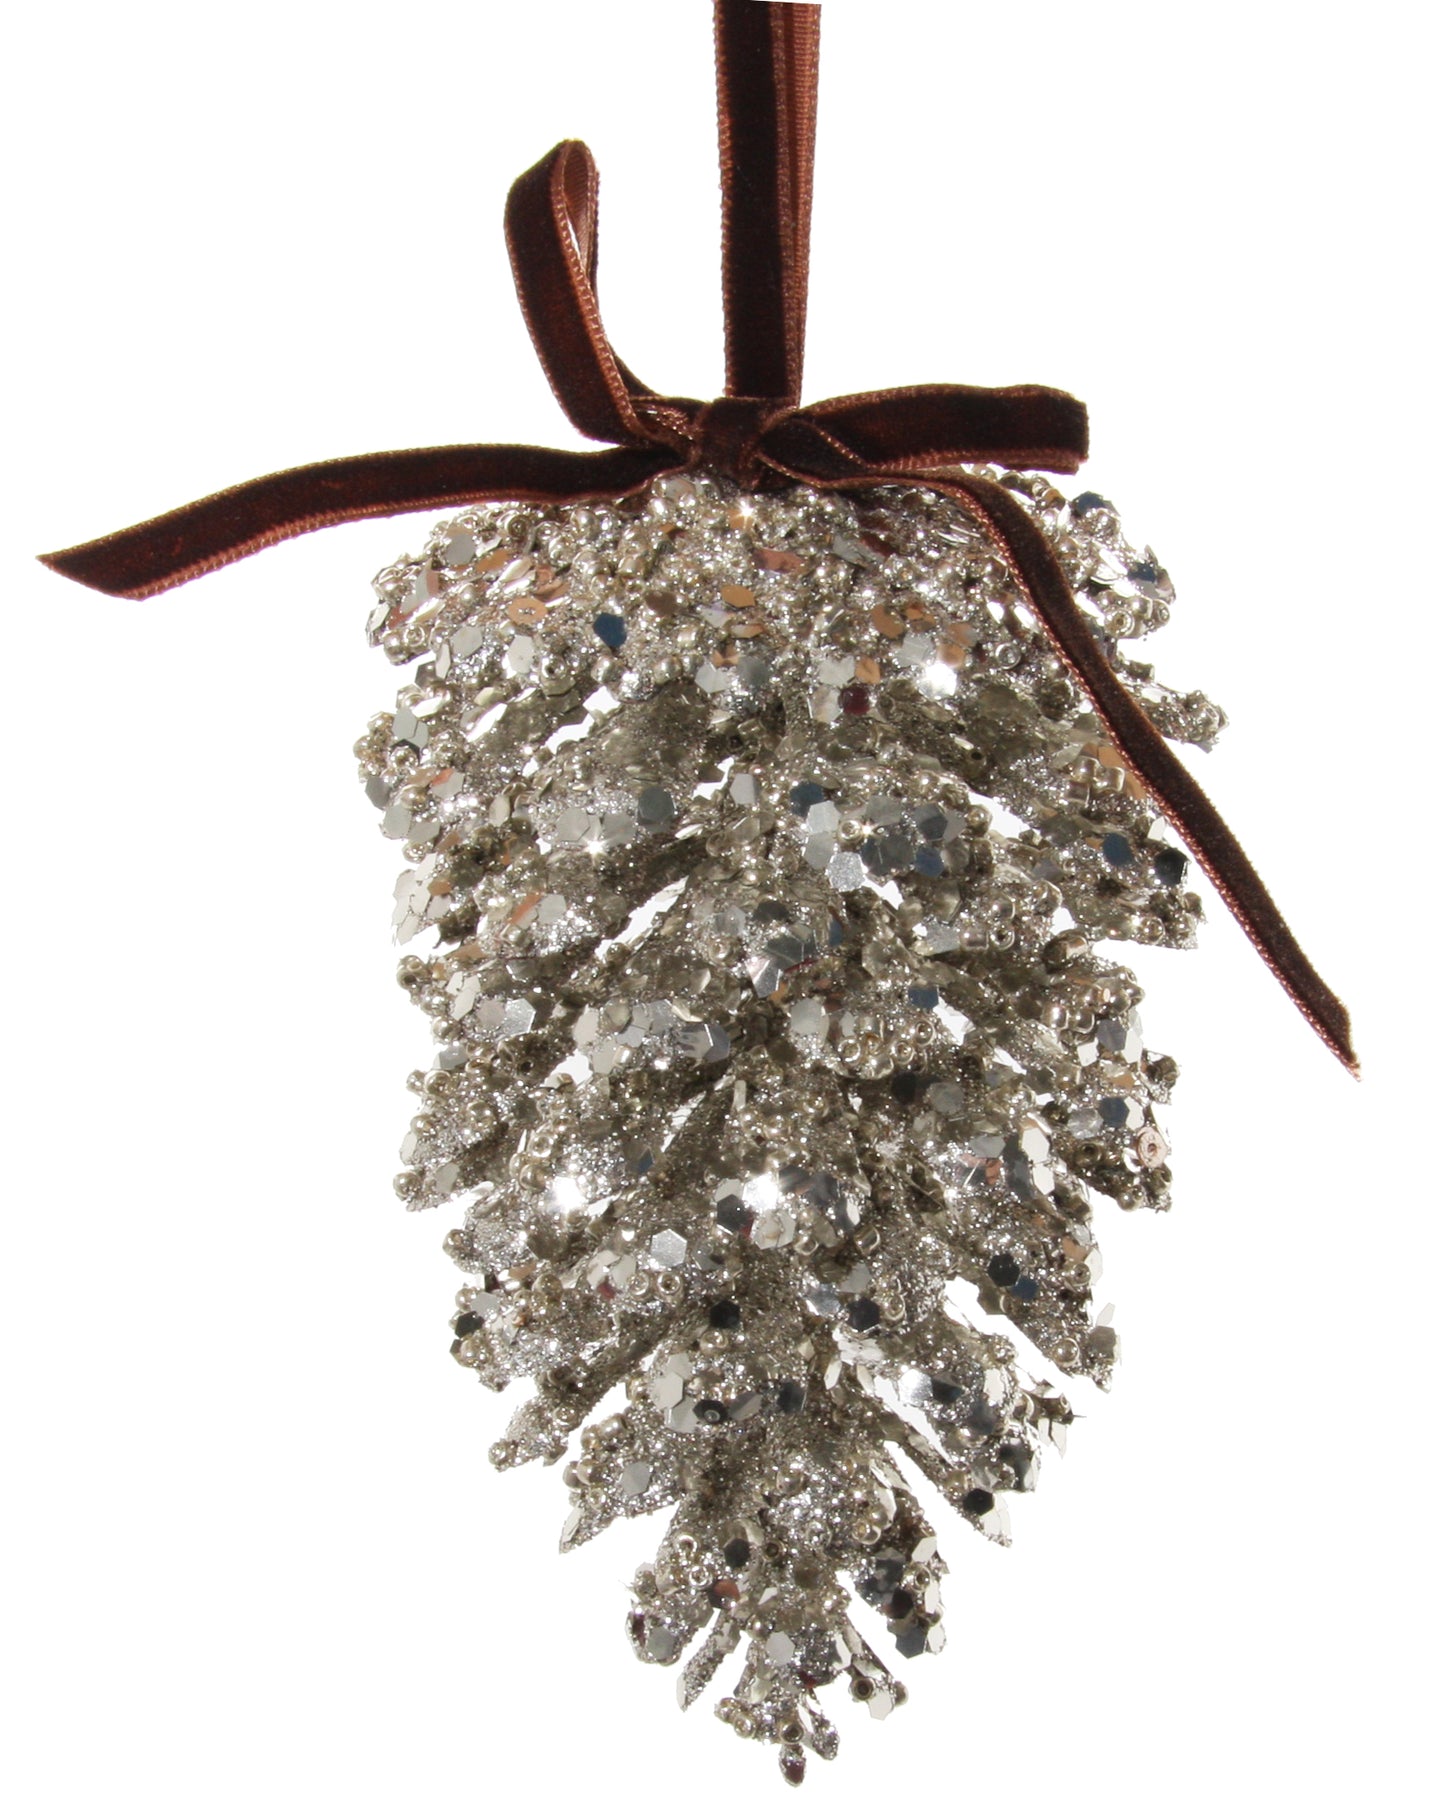 Silver Glitter Pinecone Ornament